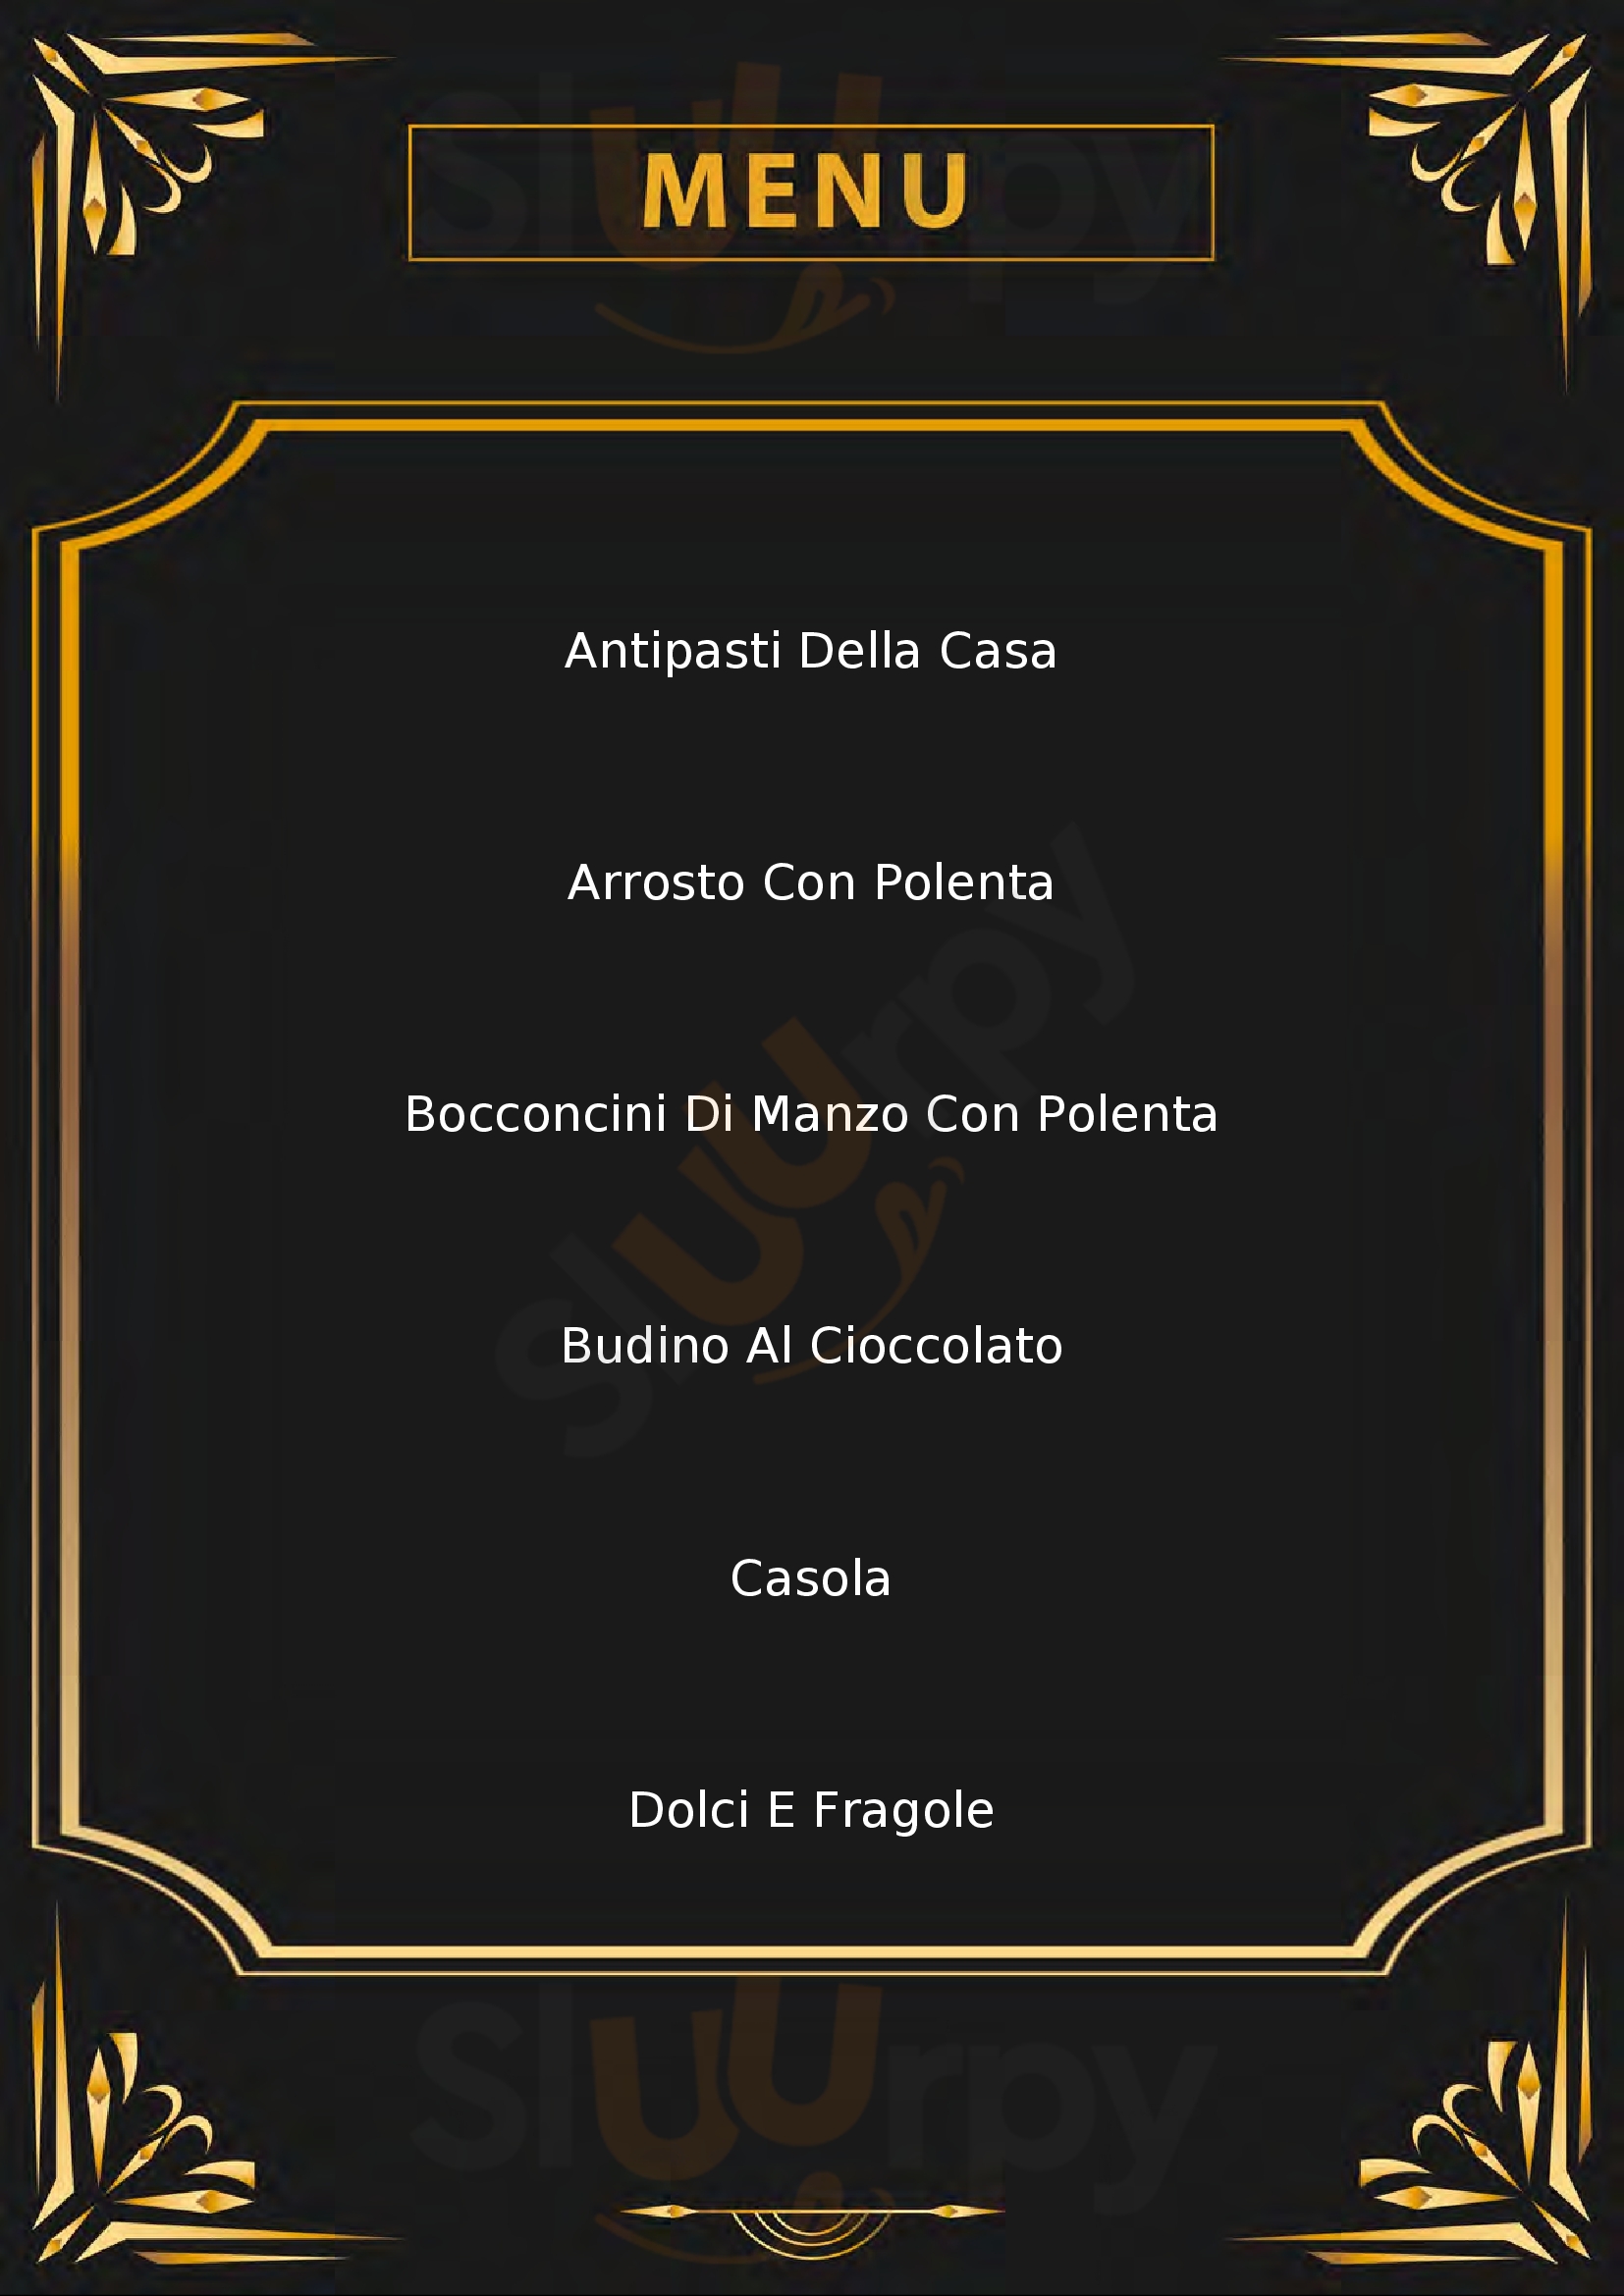 Osteria Cantina Bellini Castelli Calepio menù 1 pagina